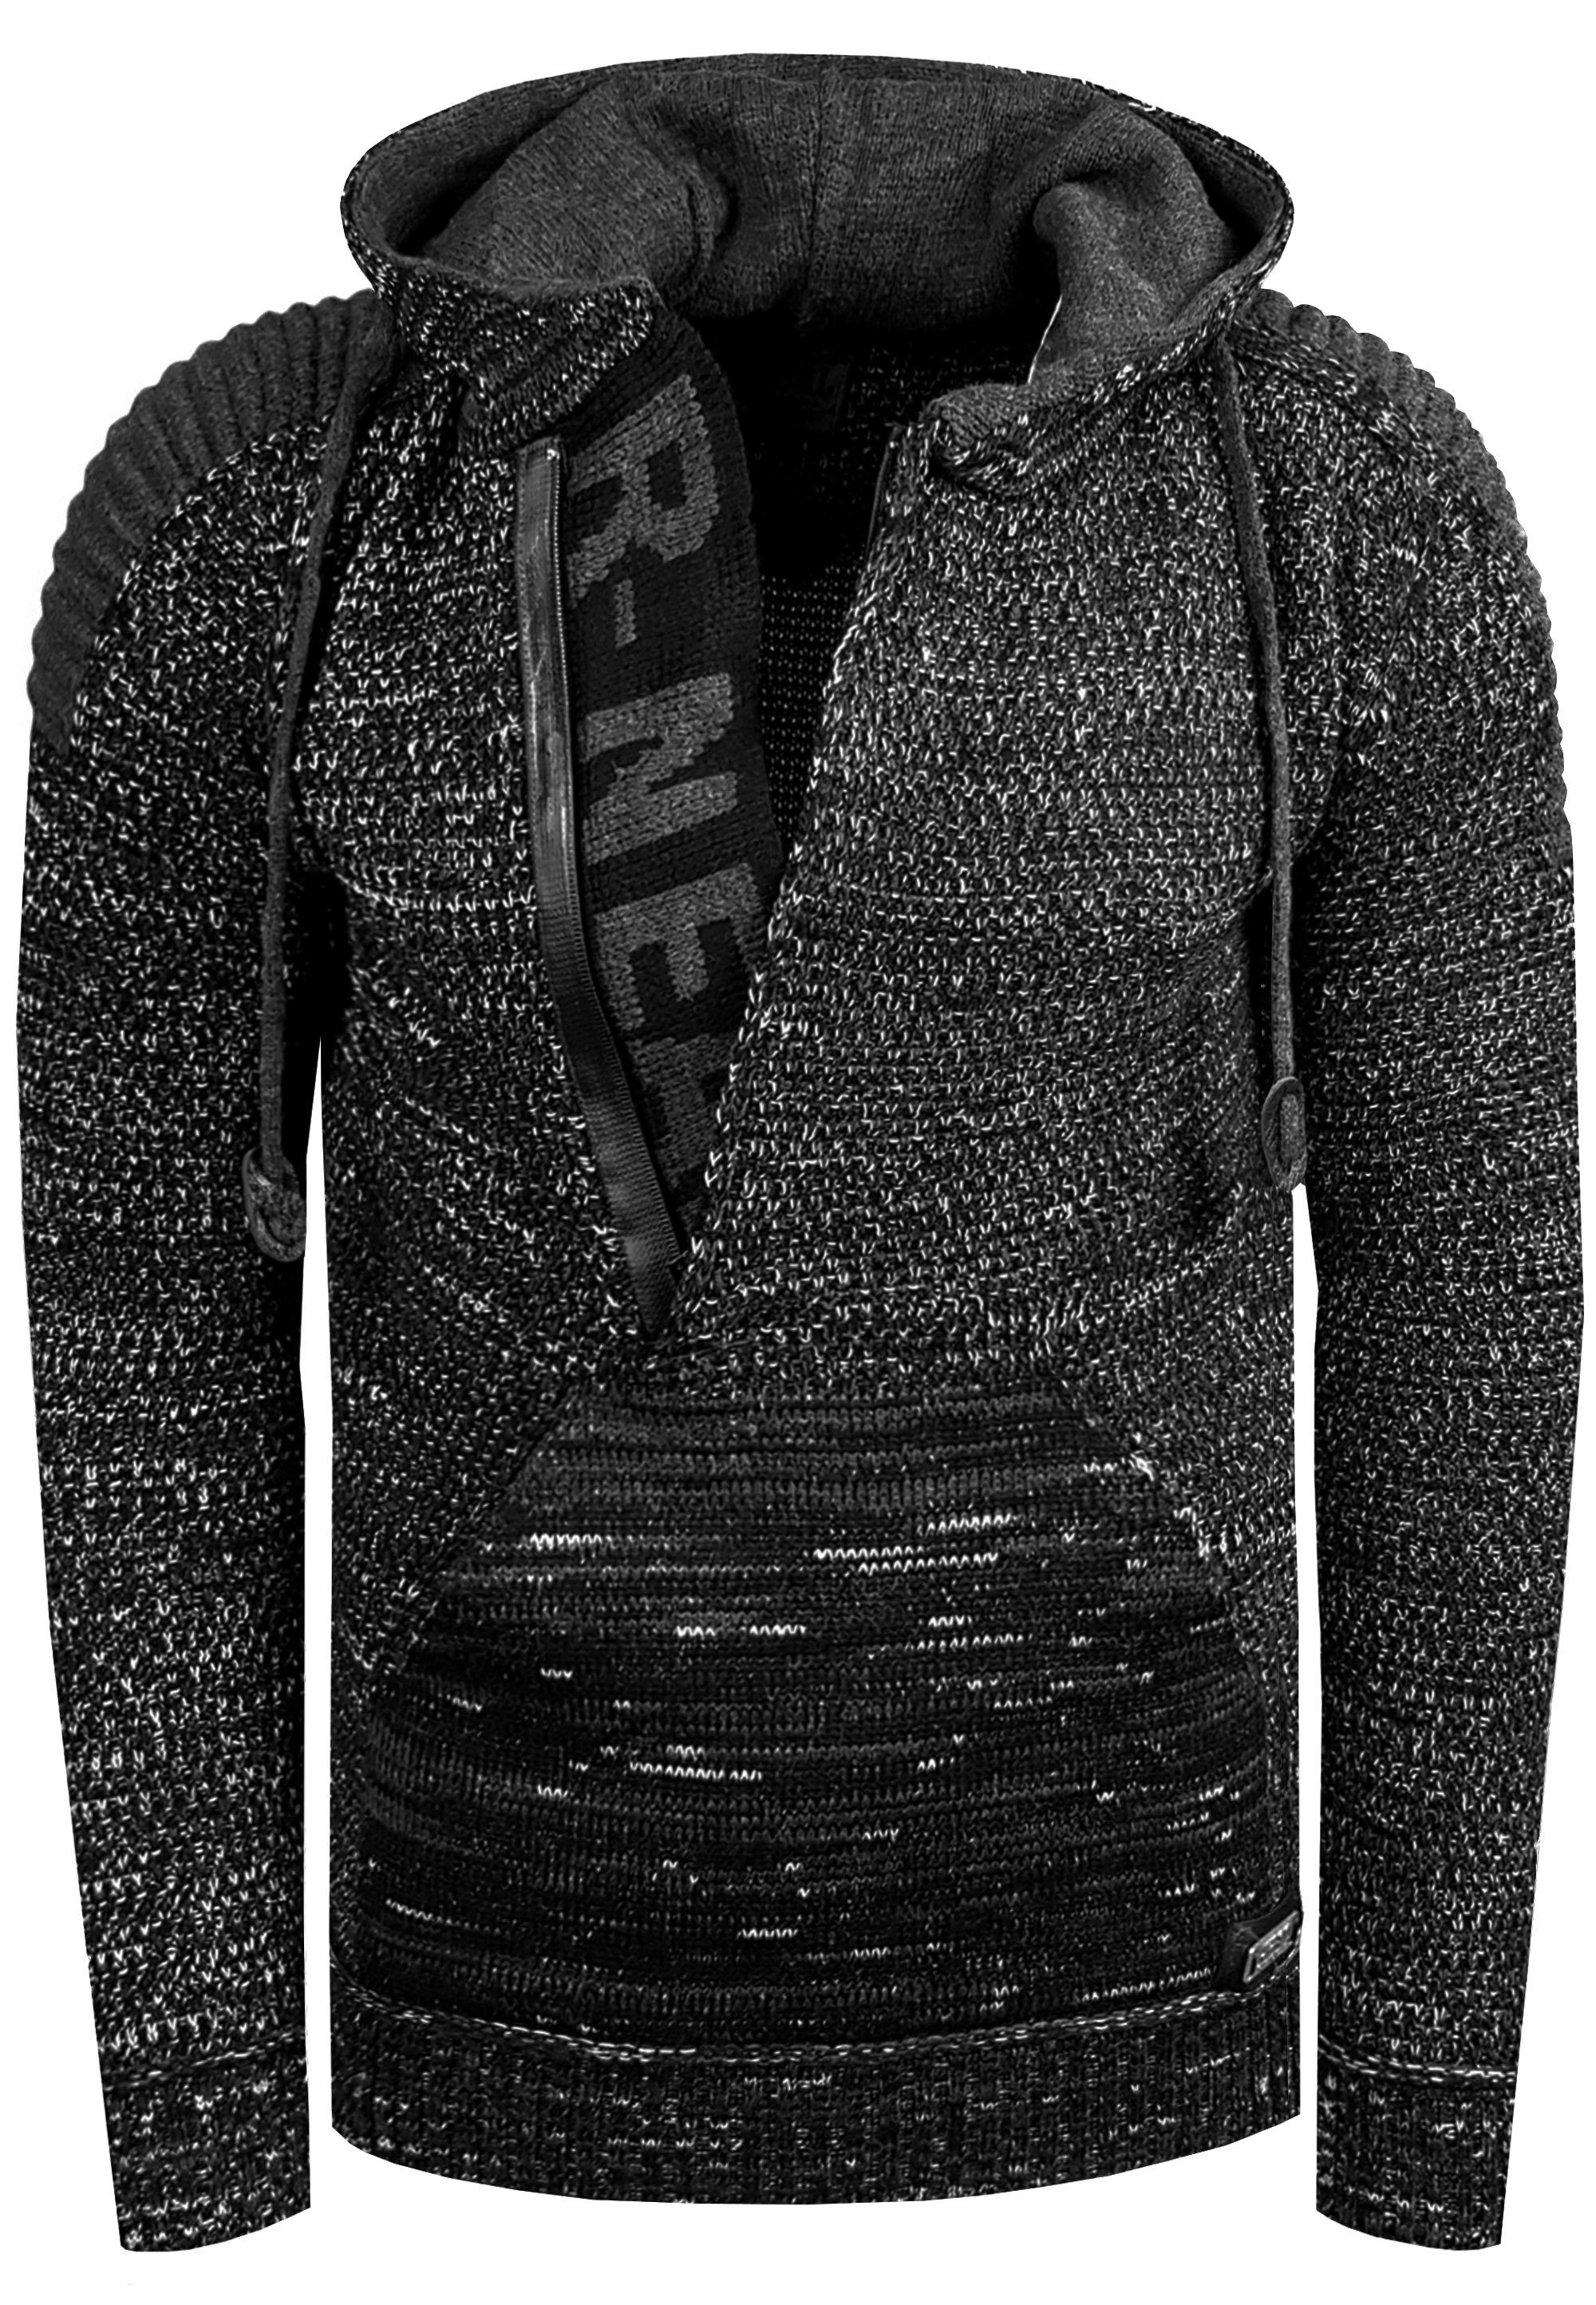 Kapuzensweatshirt schwarz Reißverschluss Rusty Knitwear mit Neal praktischem